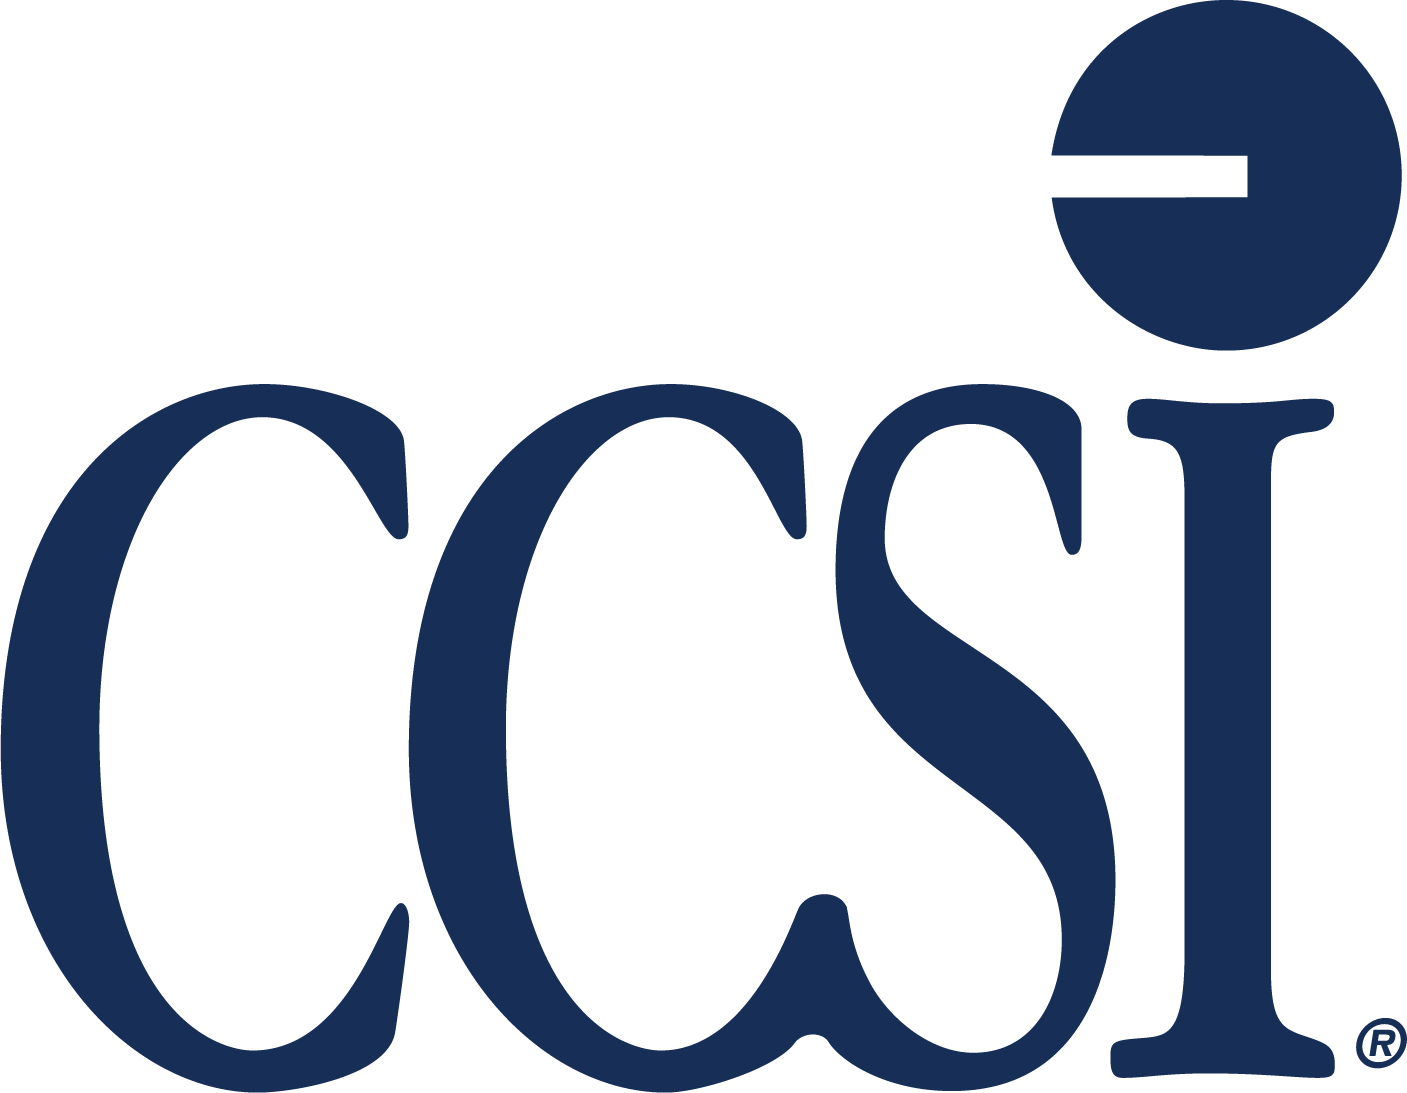 Contemporary Computer Services Inc logo